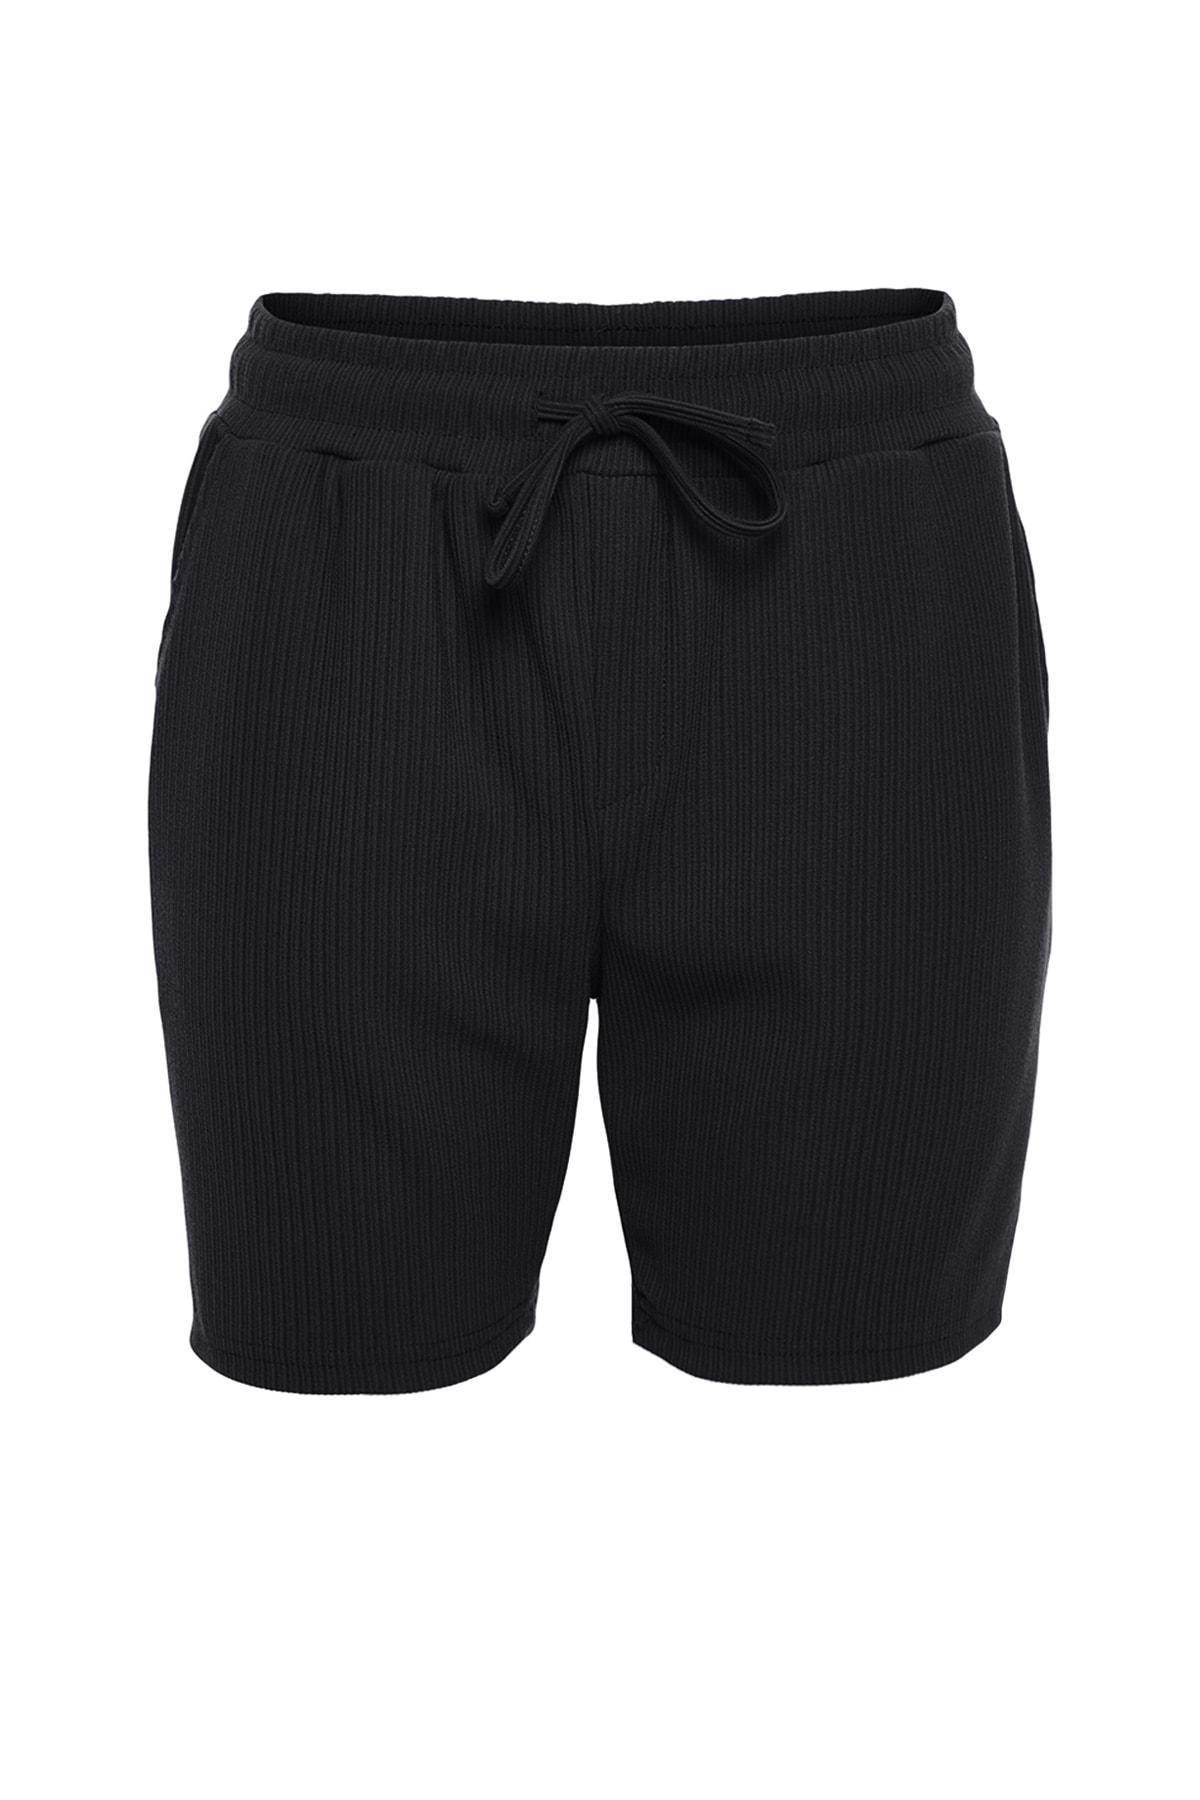 Trendyol - Black Straight Shorts